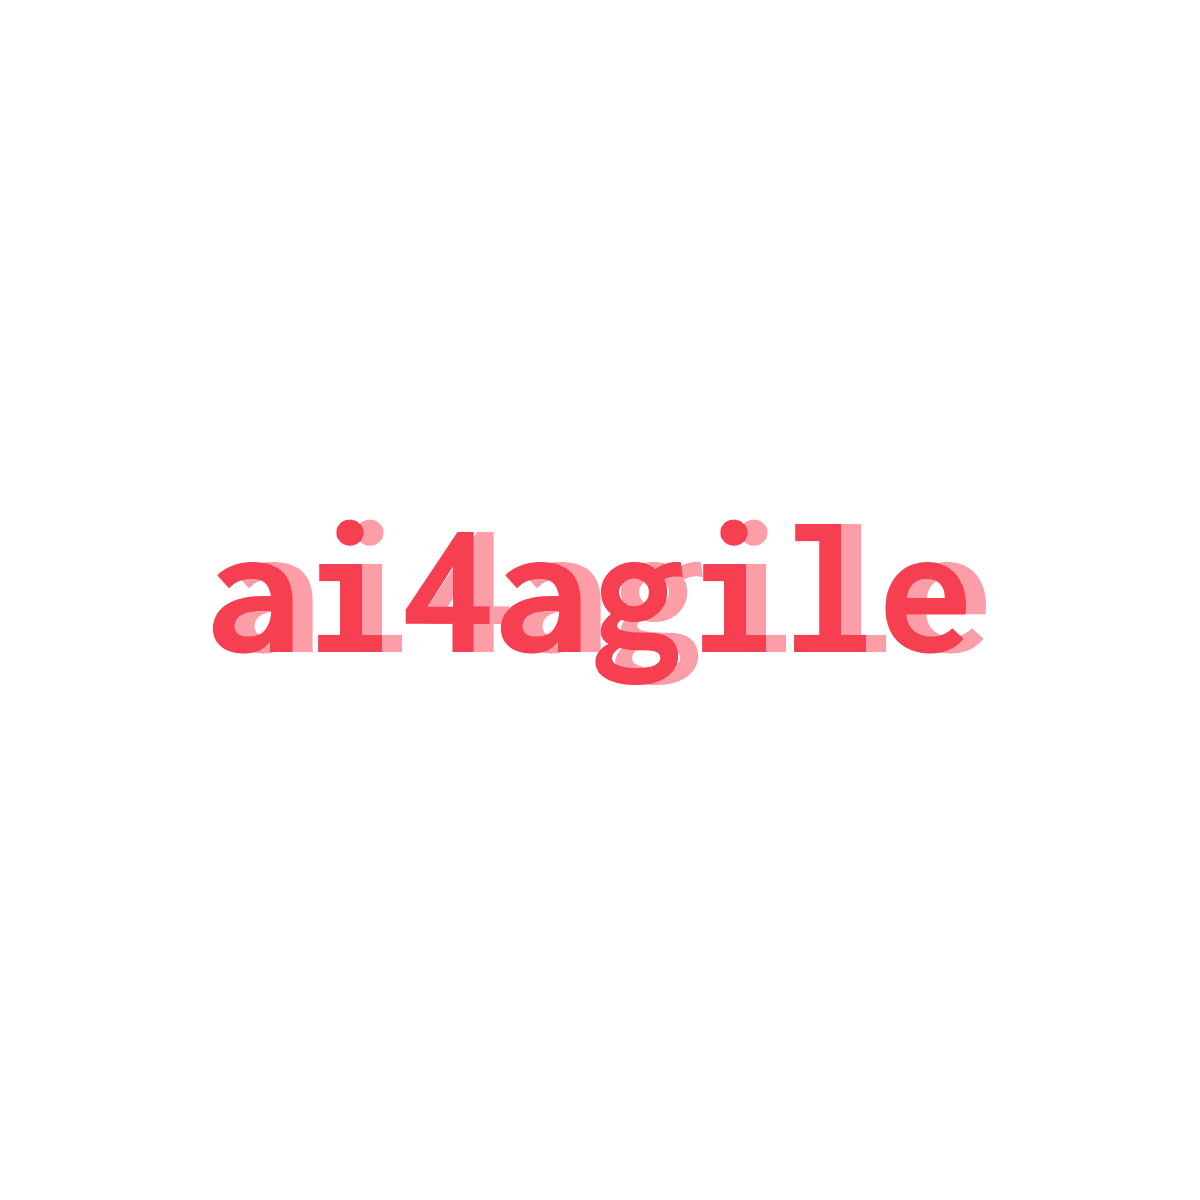 AI4Agile